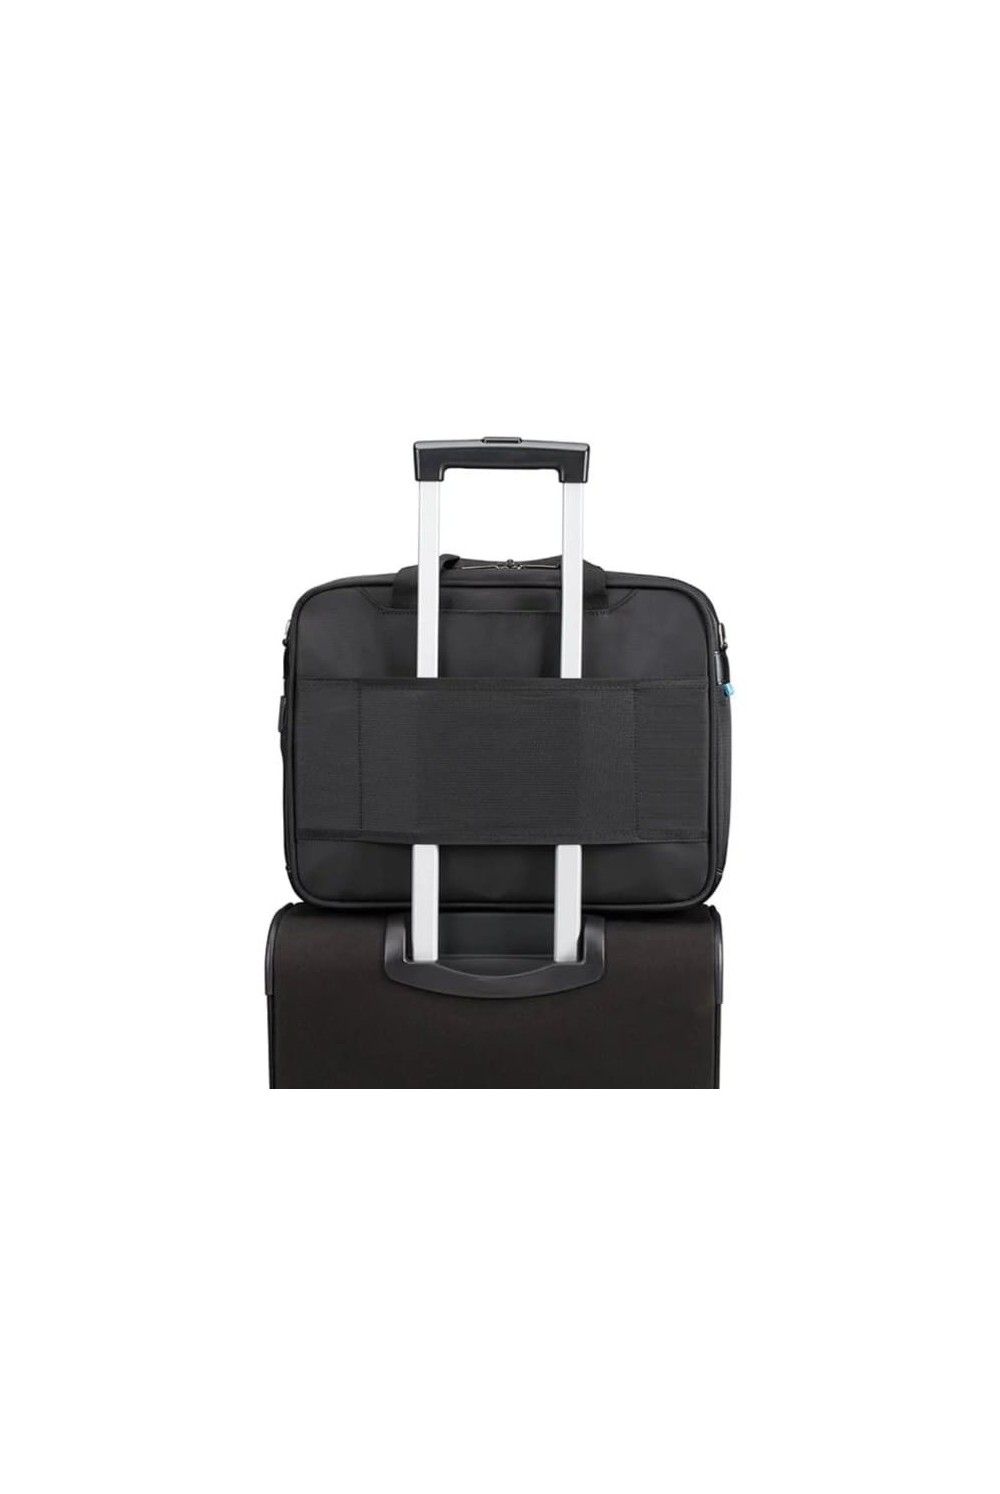 Samsonite Vectura Evo briefcase 14.1 inches